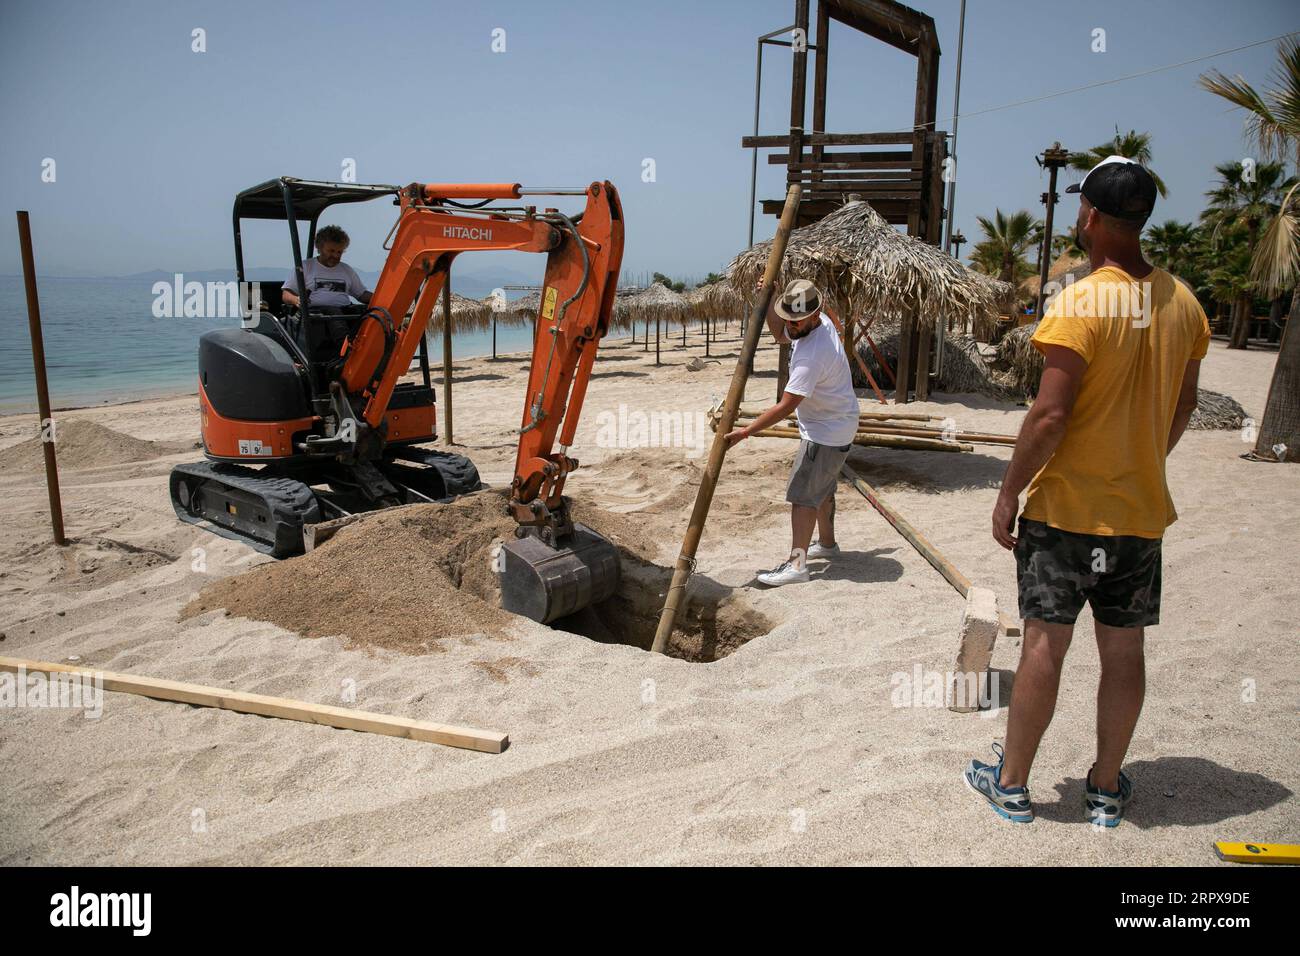 200514 -- ATENE, 14 maggio 2020 Xinhua -- i lavoratori installano un ombrello sulla spiaggia organizzata di Alimos, a sud di Atene, in Grecia, il 14 maggio 2020. Mercoledì i funzionari greci hanno annunciato che a partire dal 16 maggio le 515 spiagge organizzate del paese apriranno sotto restrizioni per evitare il sovraffollamento. Il Ministero della salute greco ha riferito giovedì che il numero di infezioni da COVID-19 ha raggiunto 2.770 e ci sono stati 156 decessi dall'inizio dell'epidemia nel paese il 26 febbraio. Foto di Lefteris Partsalis/Xinhua GREECE-BEACH-REOPENING PUBLICATIONxNOTxINxCHN Foto Stock